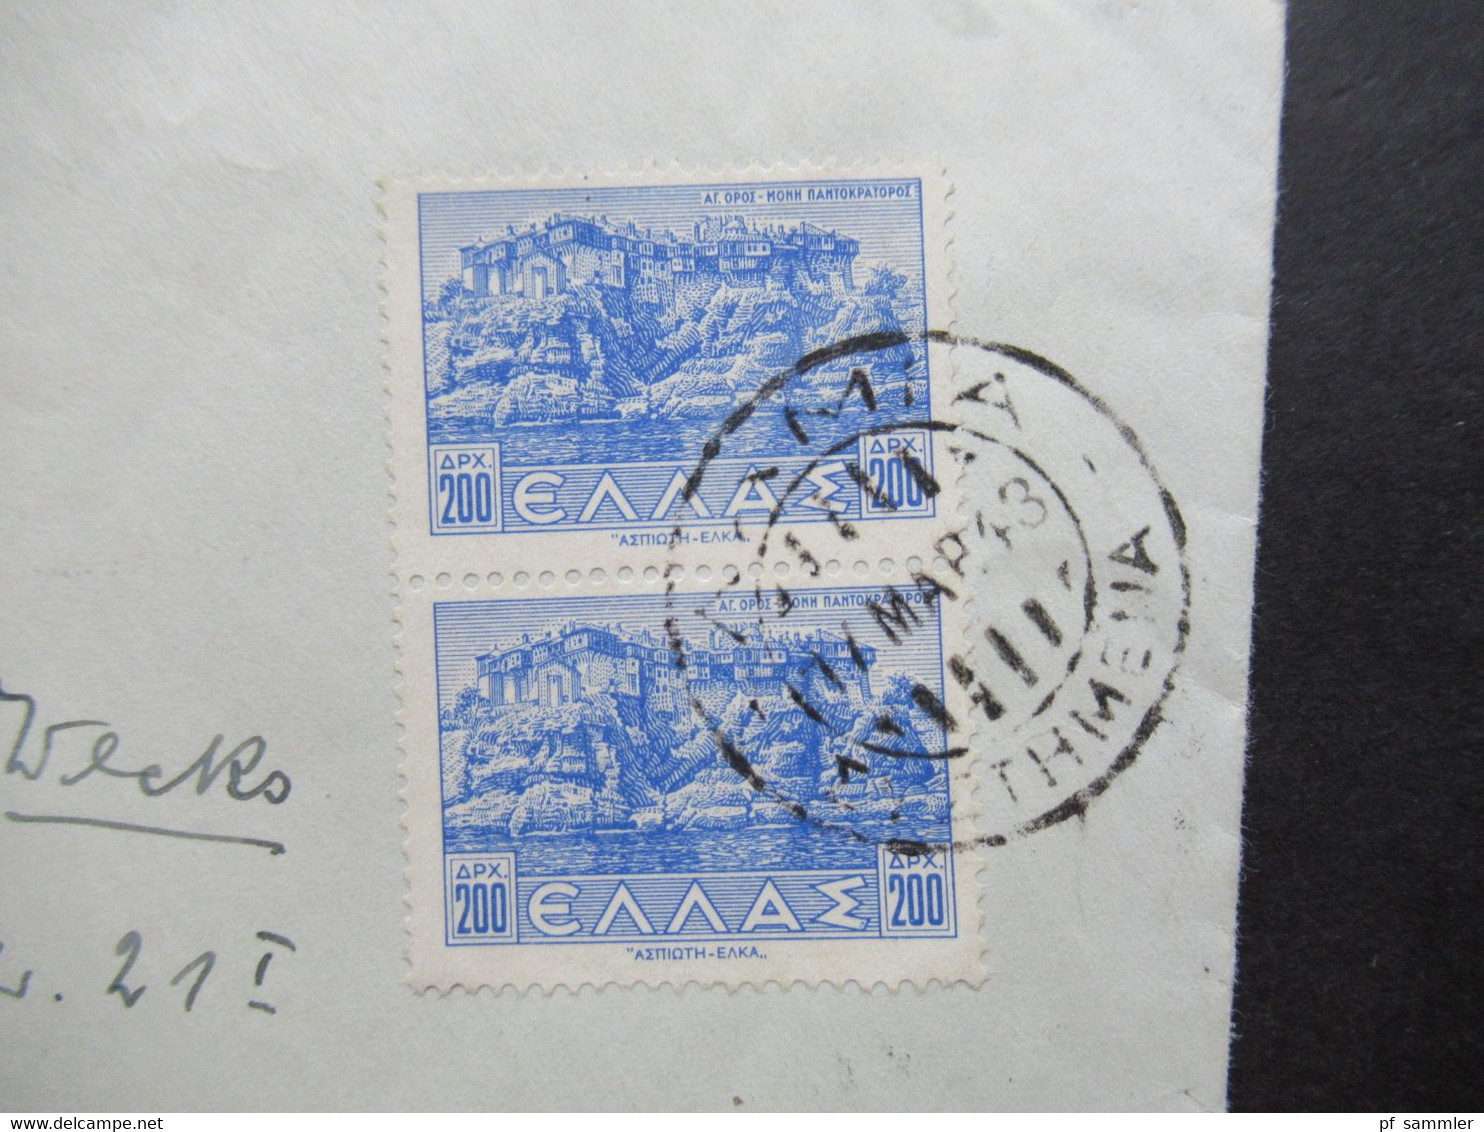 Griechenland 1943 Einschreiben Lamia - Wiesbaden Mit Mehrfachzensur OKW Und Comando Superiore Verificato Per Censura - Cartas & Documentos